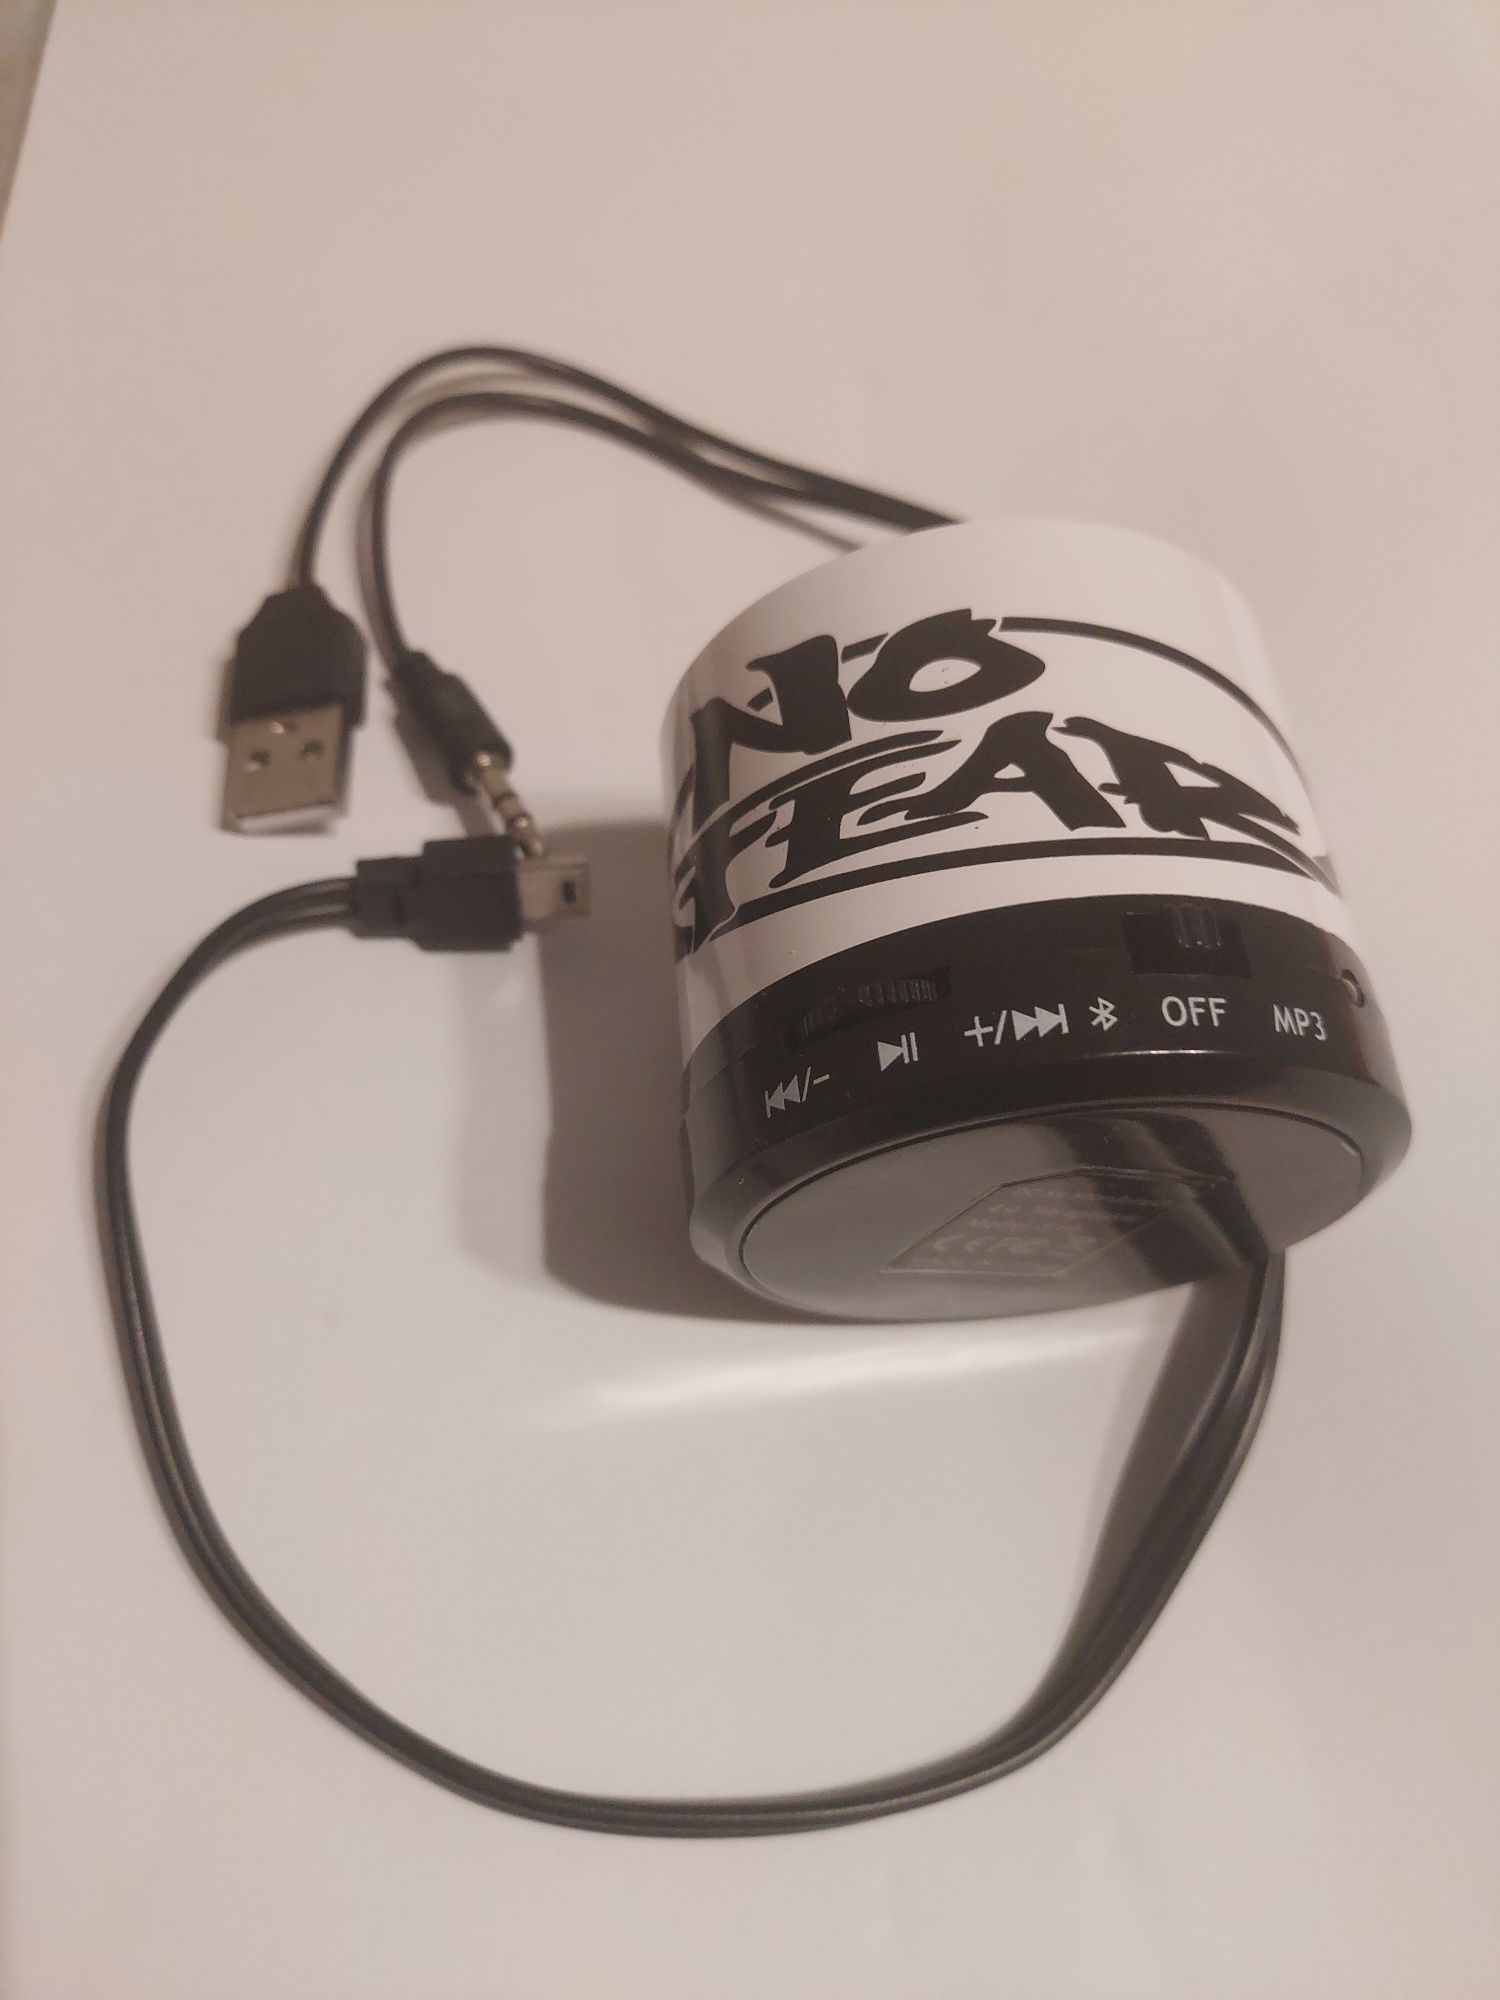 Bezprzewodowy głośnik przenośny Bluetooth turystyczny tele MP3 microSD